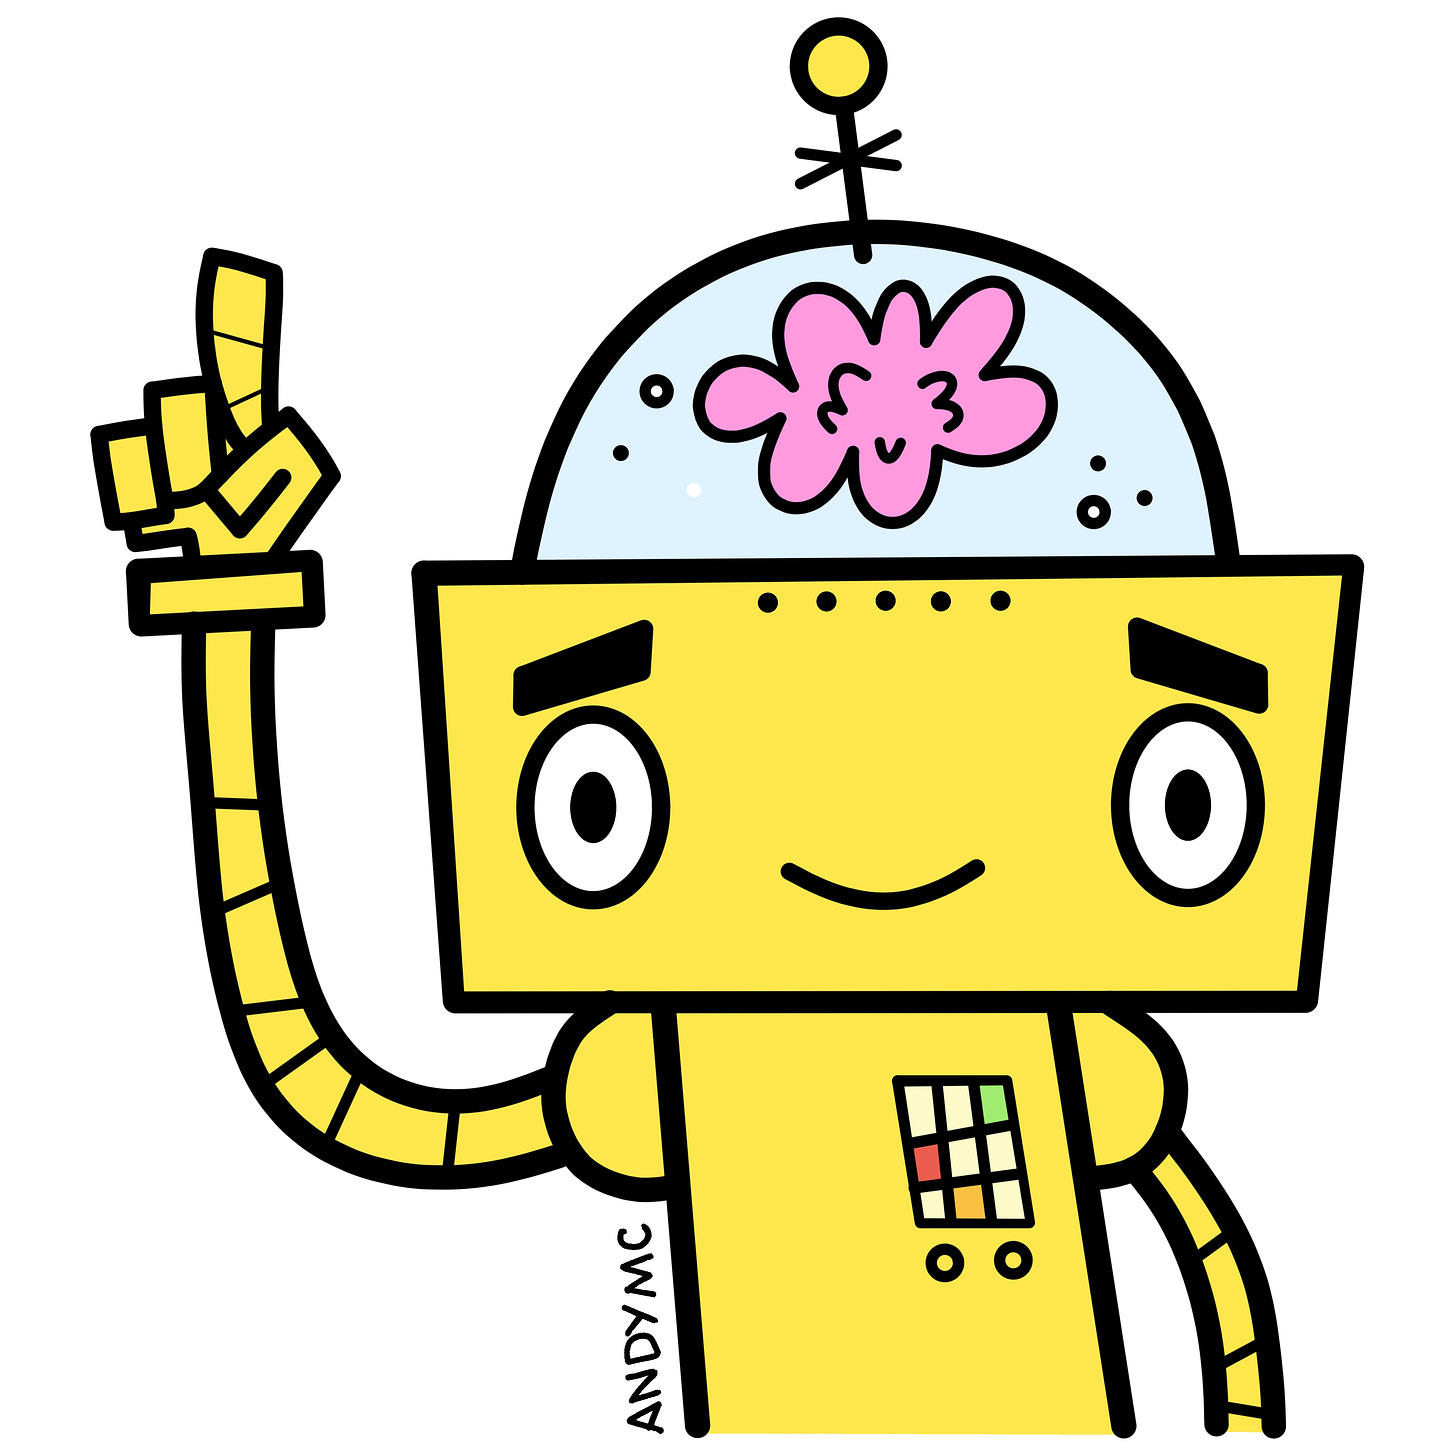 An illustration of a cartoon robot.